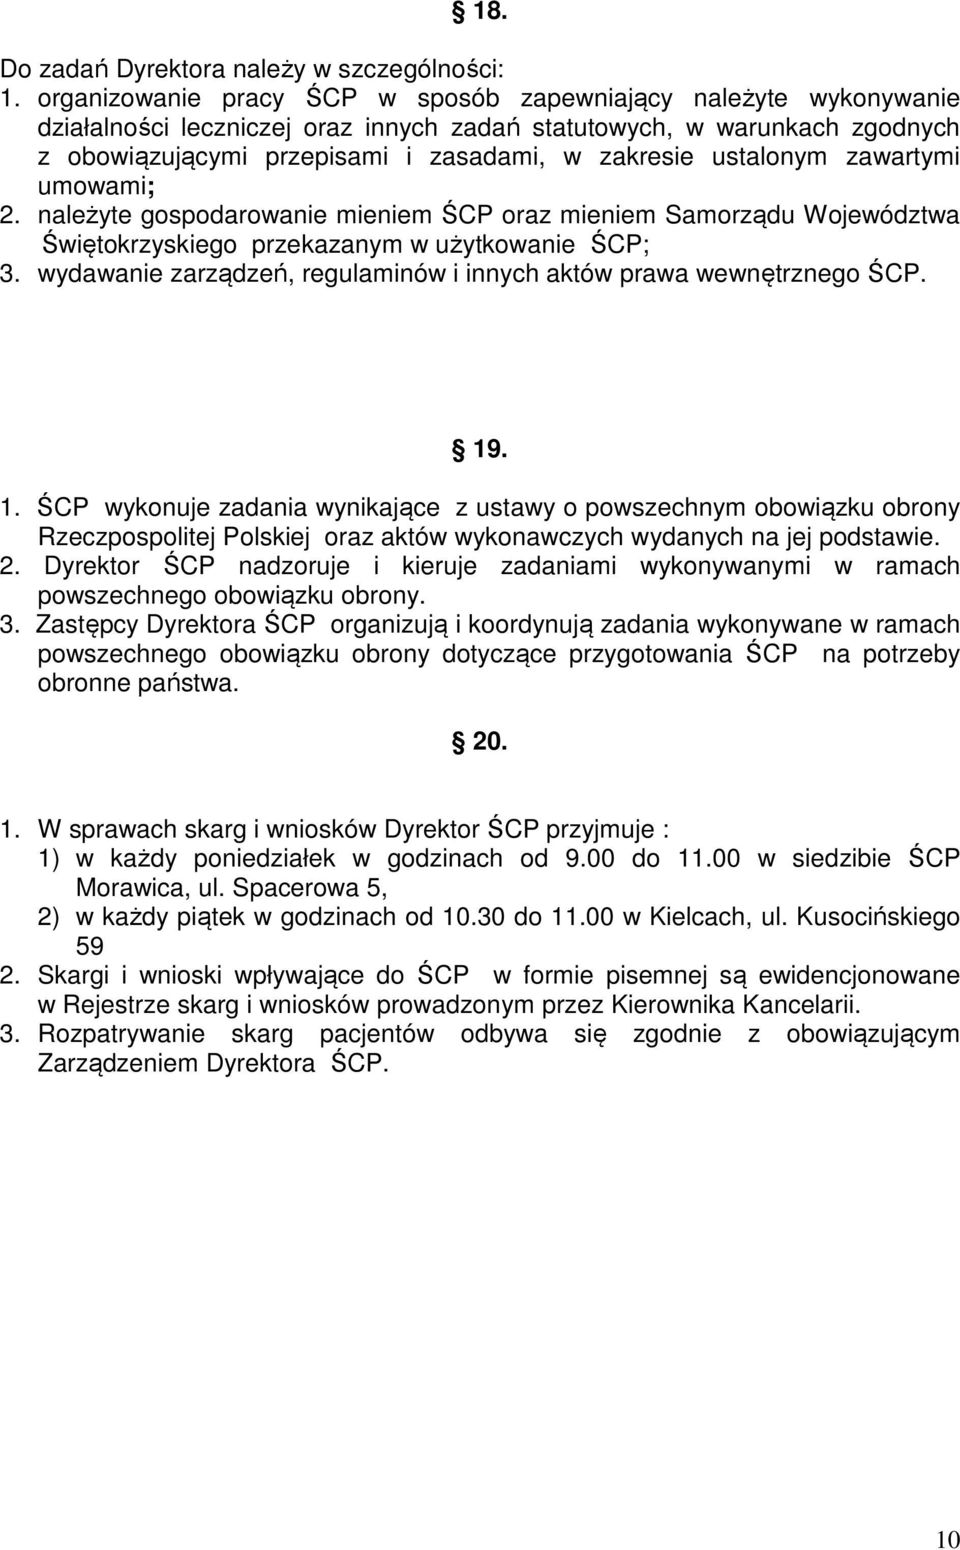 ustalonym zawartymi umowami; 2. należyte gospodarowanie mieniem ŚCP oraz mieniem Samorządu Województwa Świętokrzyskiego przekazanym w użytkowanie ŚCP; 3.